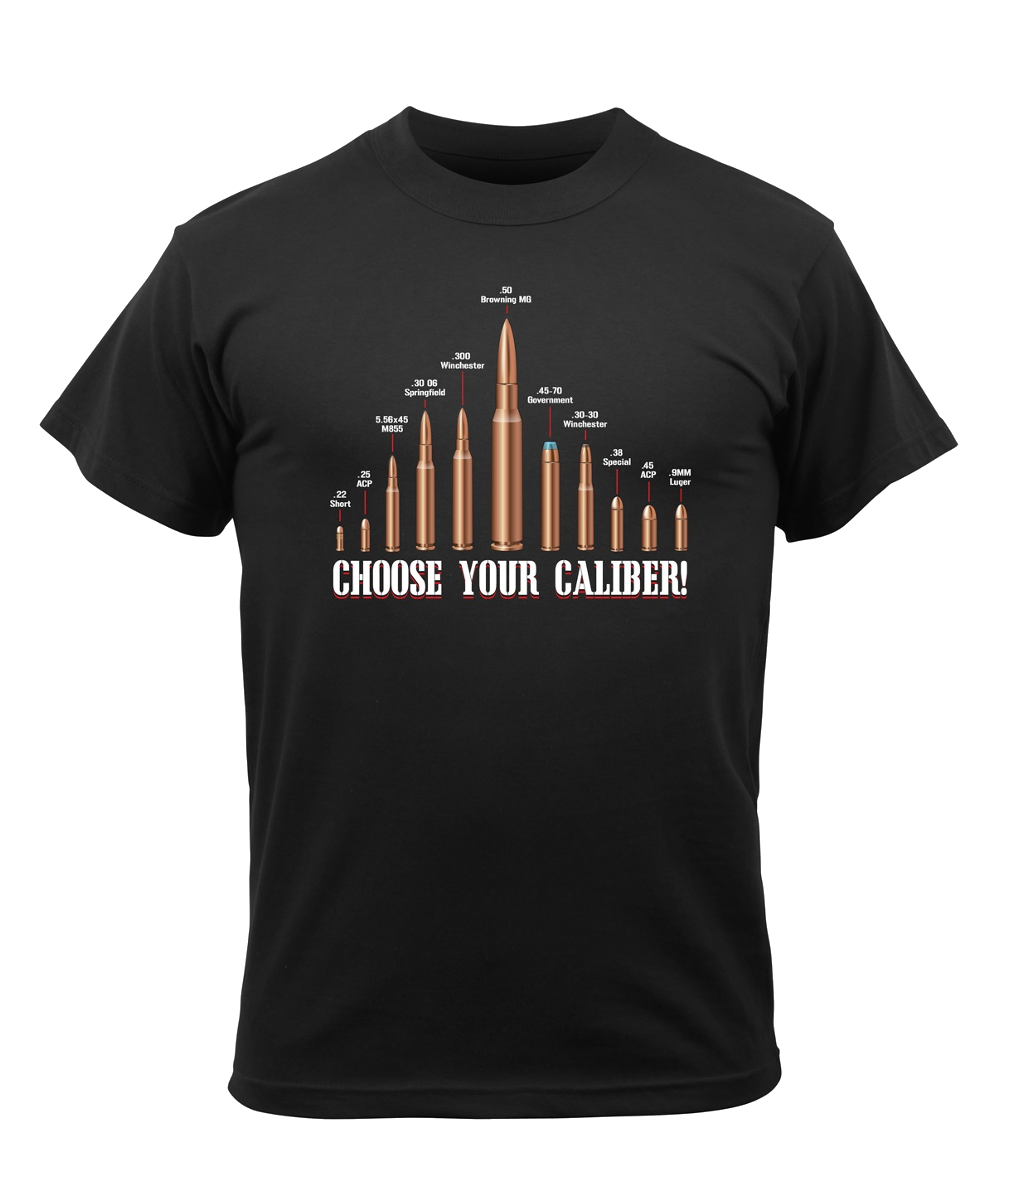 Choose your caliber, T-Shirt